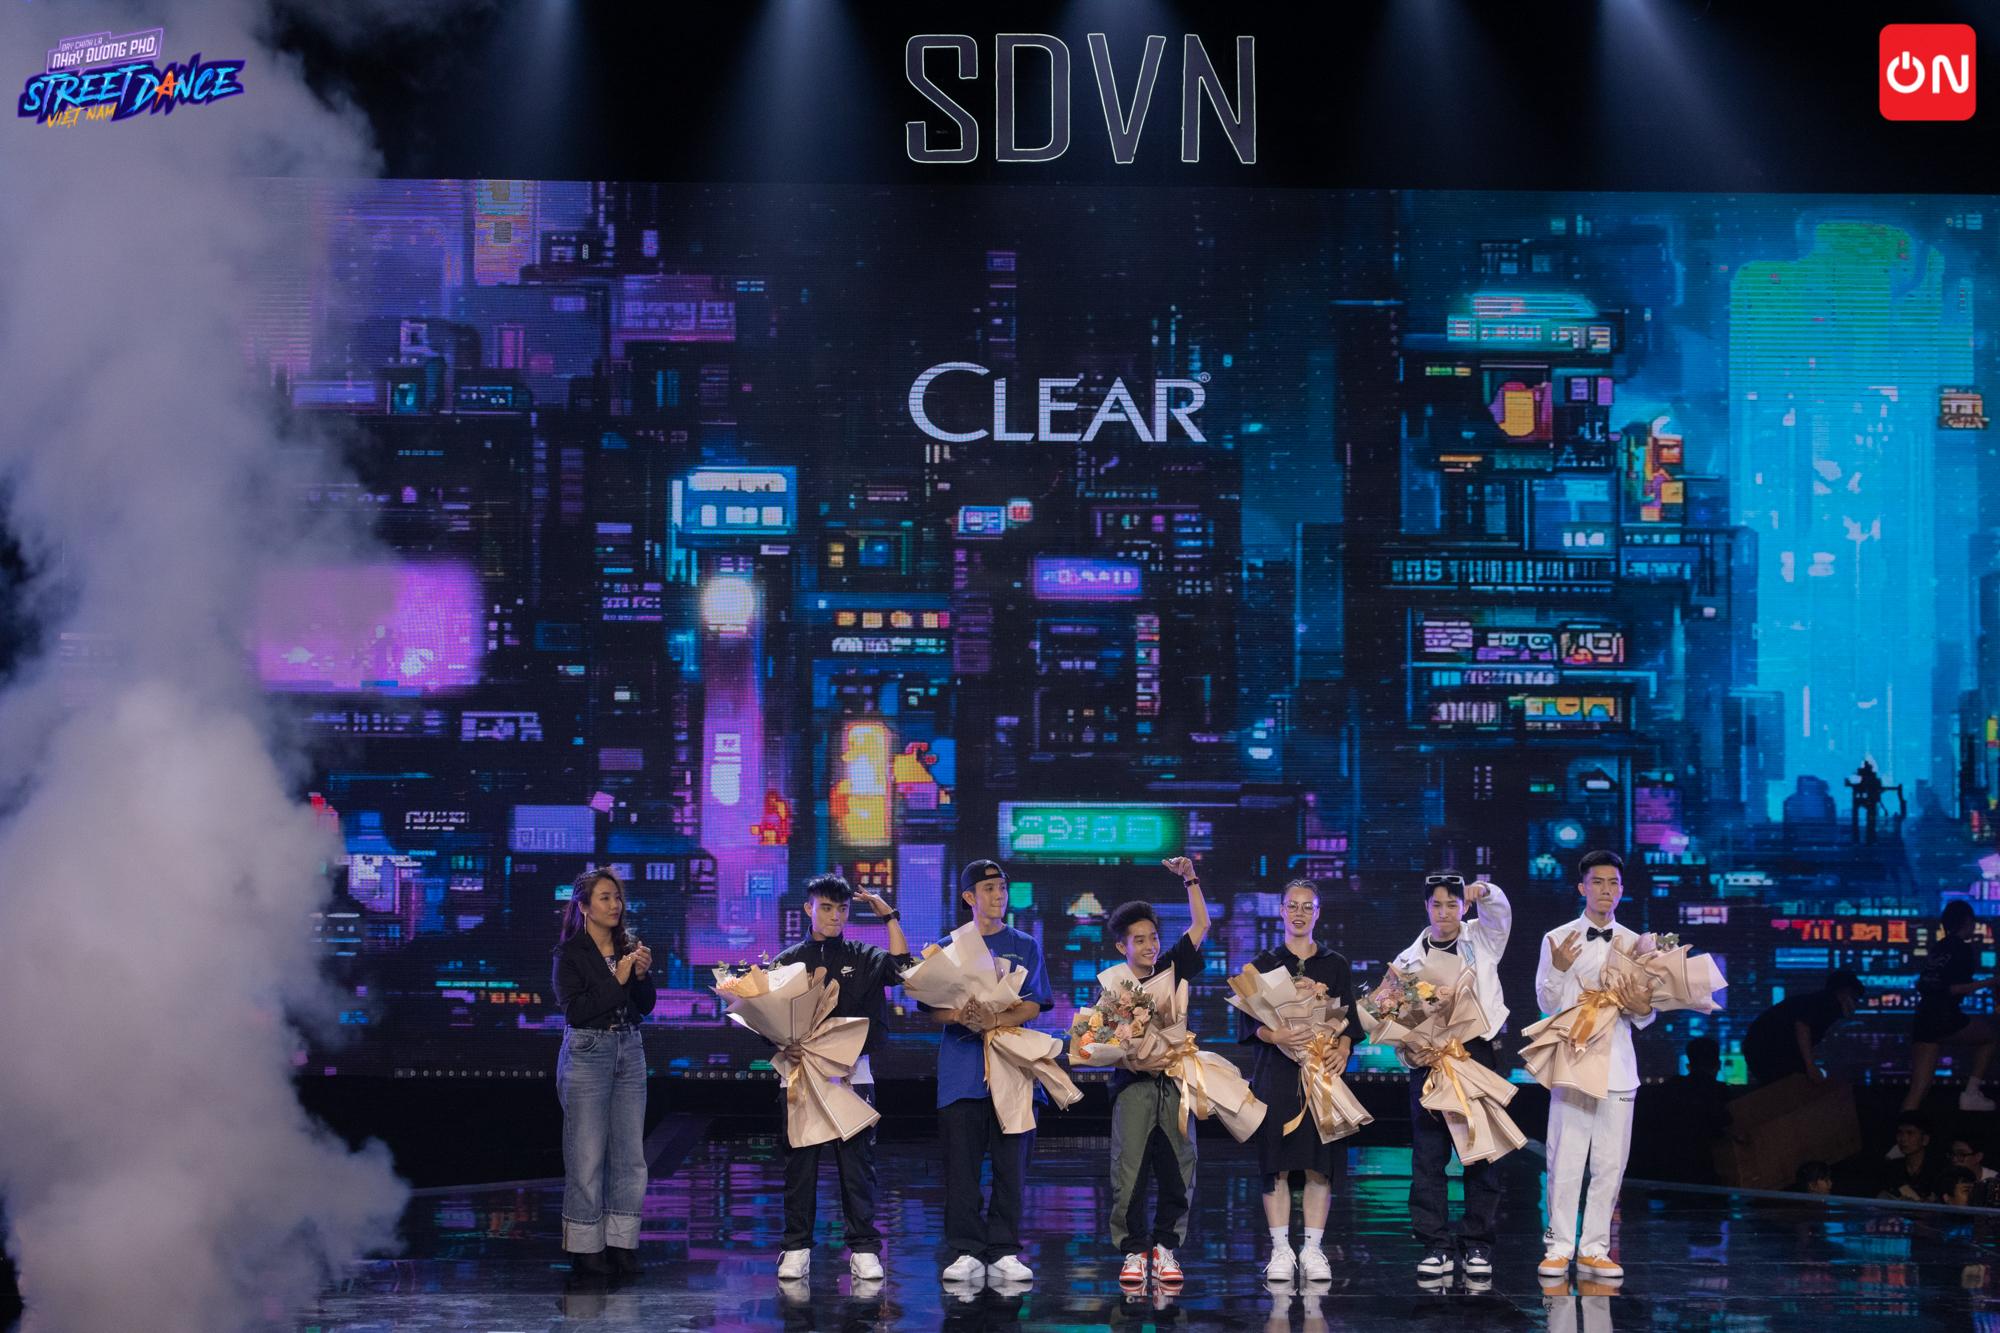 CLEAR thưởng nóng 600 triệu cho các thí sinh ngay đêm chung kết Street Dance Việt Nam, lan tỏa thông điệp “Đầu Lạnh Tim Nóng” bằng chuỗi hành động thiết thực - Ảnh 3.